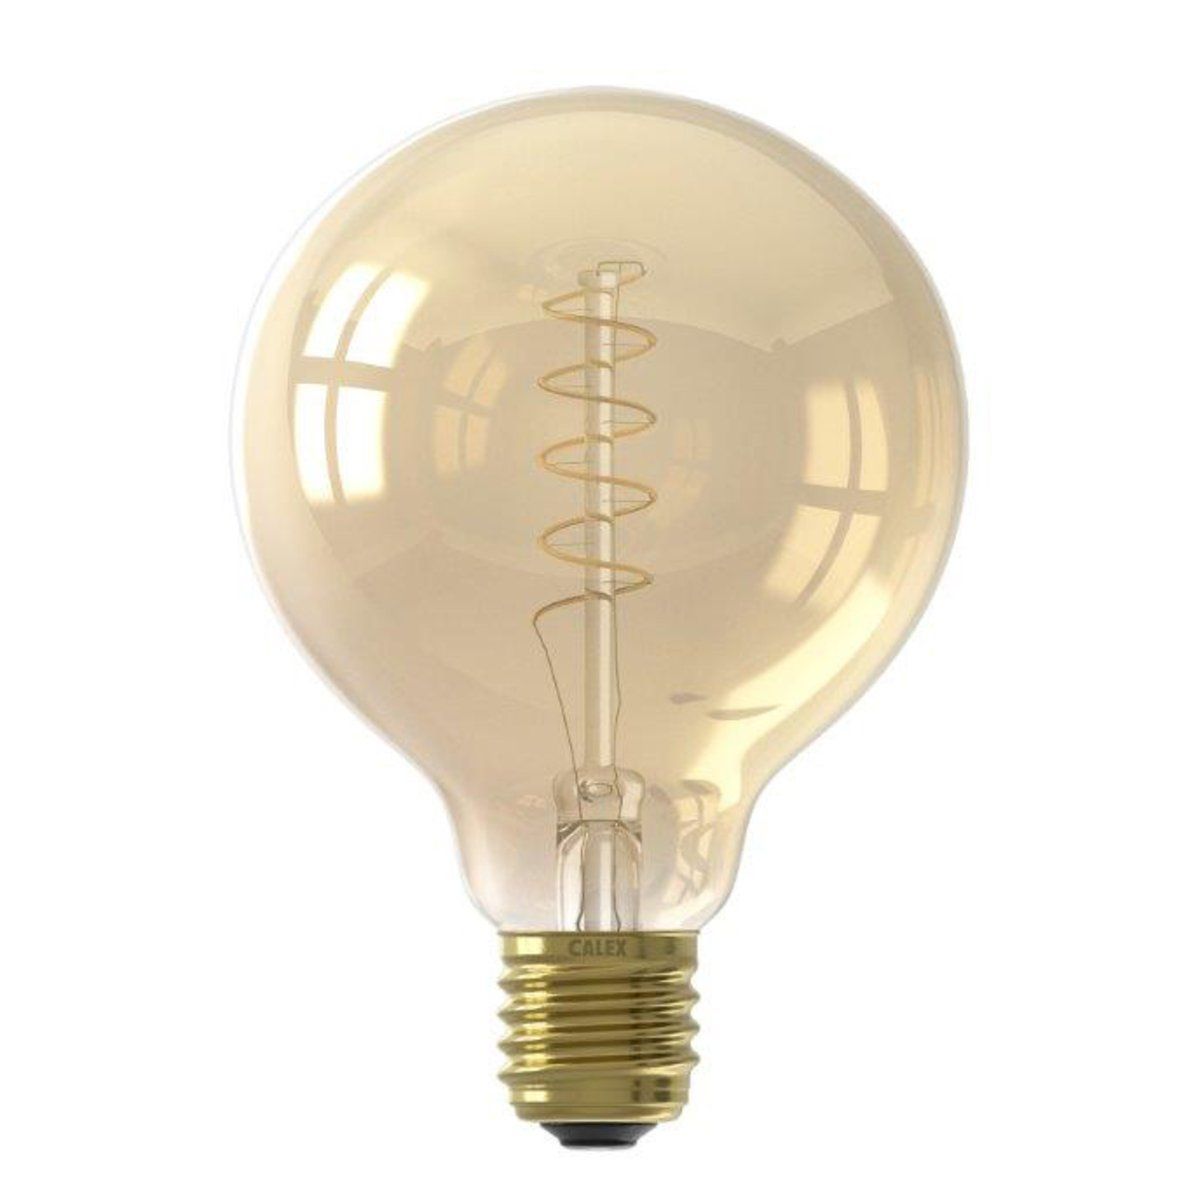 Ampoule déco filament LED dimmable E27 AMBRE FLEX 200 lumens en verre ambré Ø9.5cm